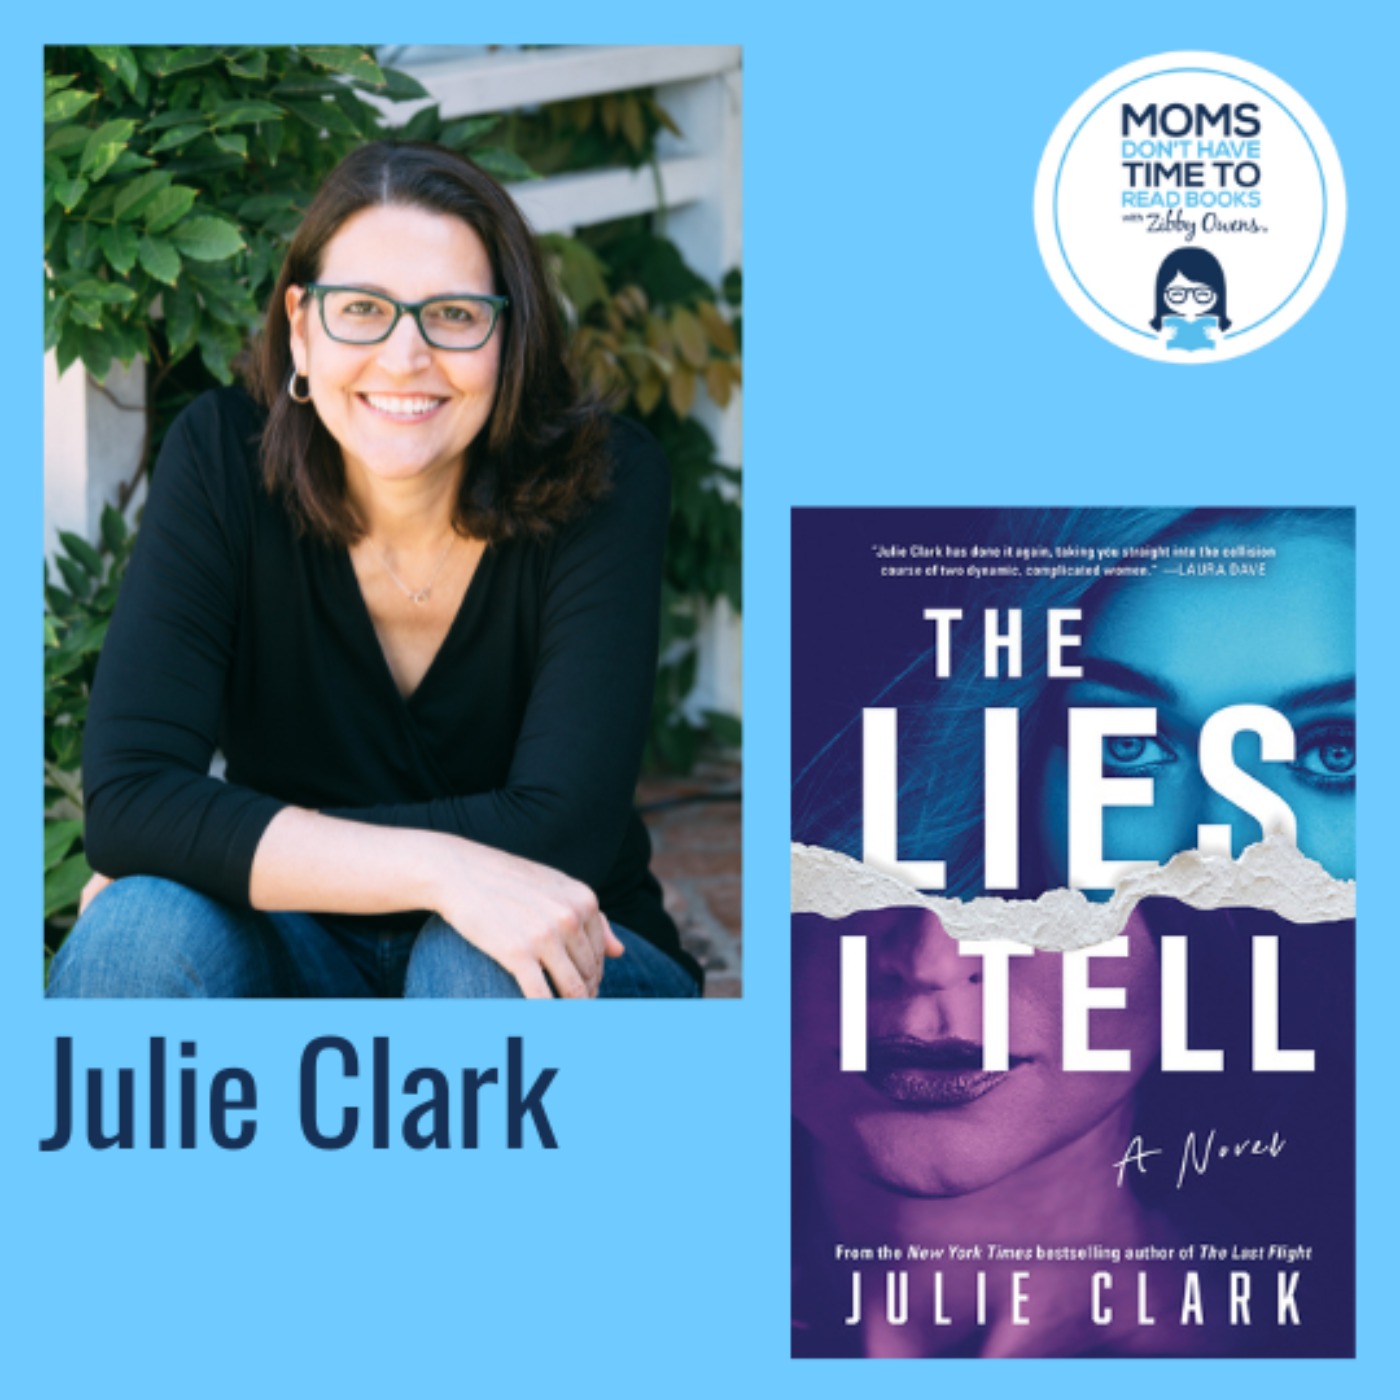 Julie Clark, THE LIES I TELL: A Novel